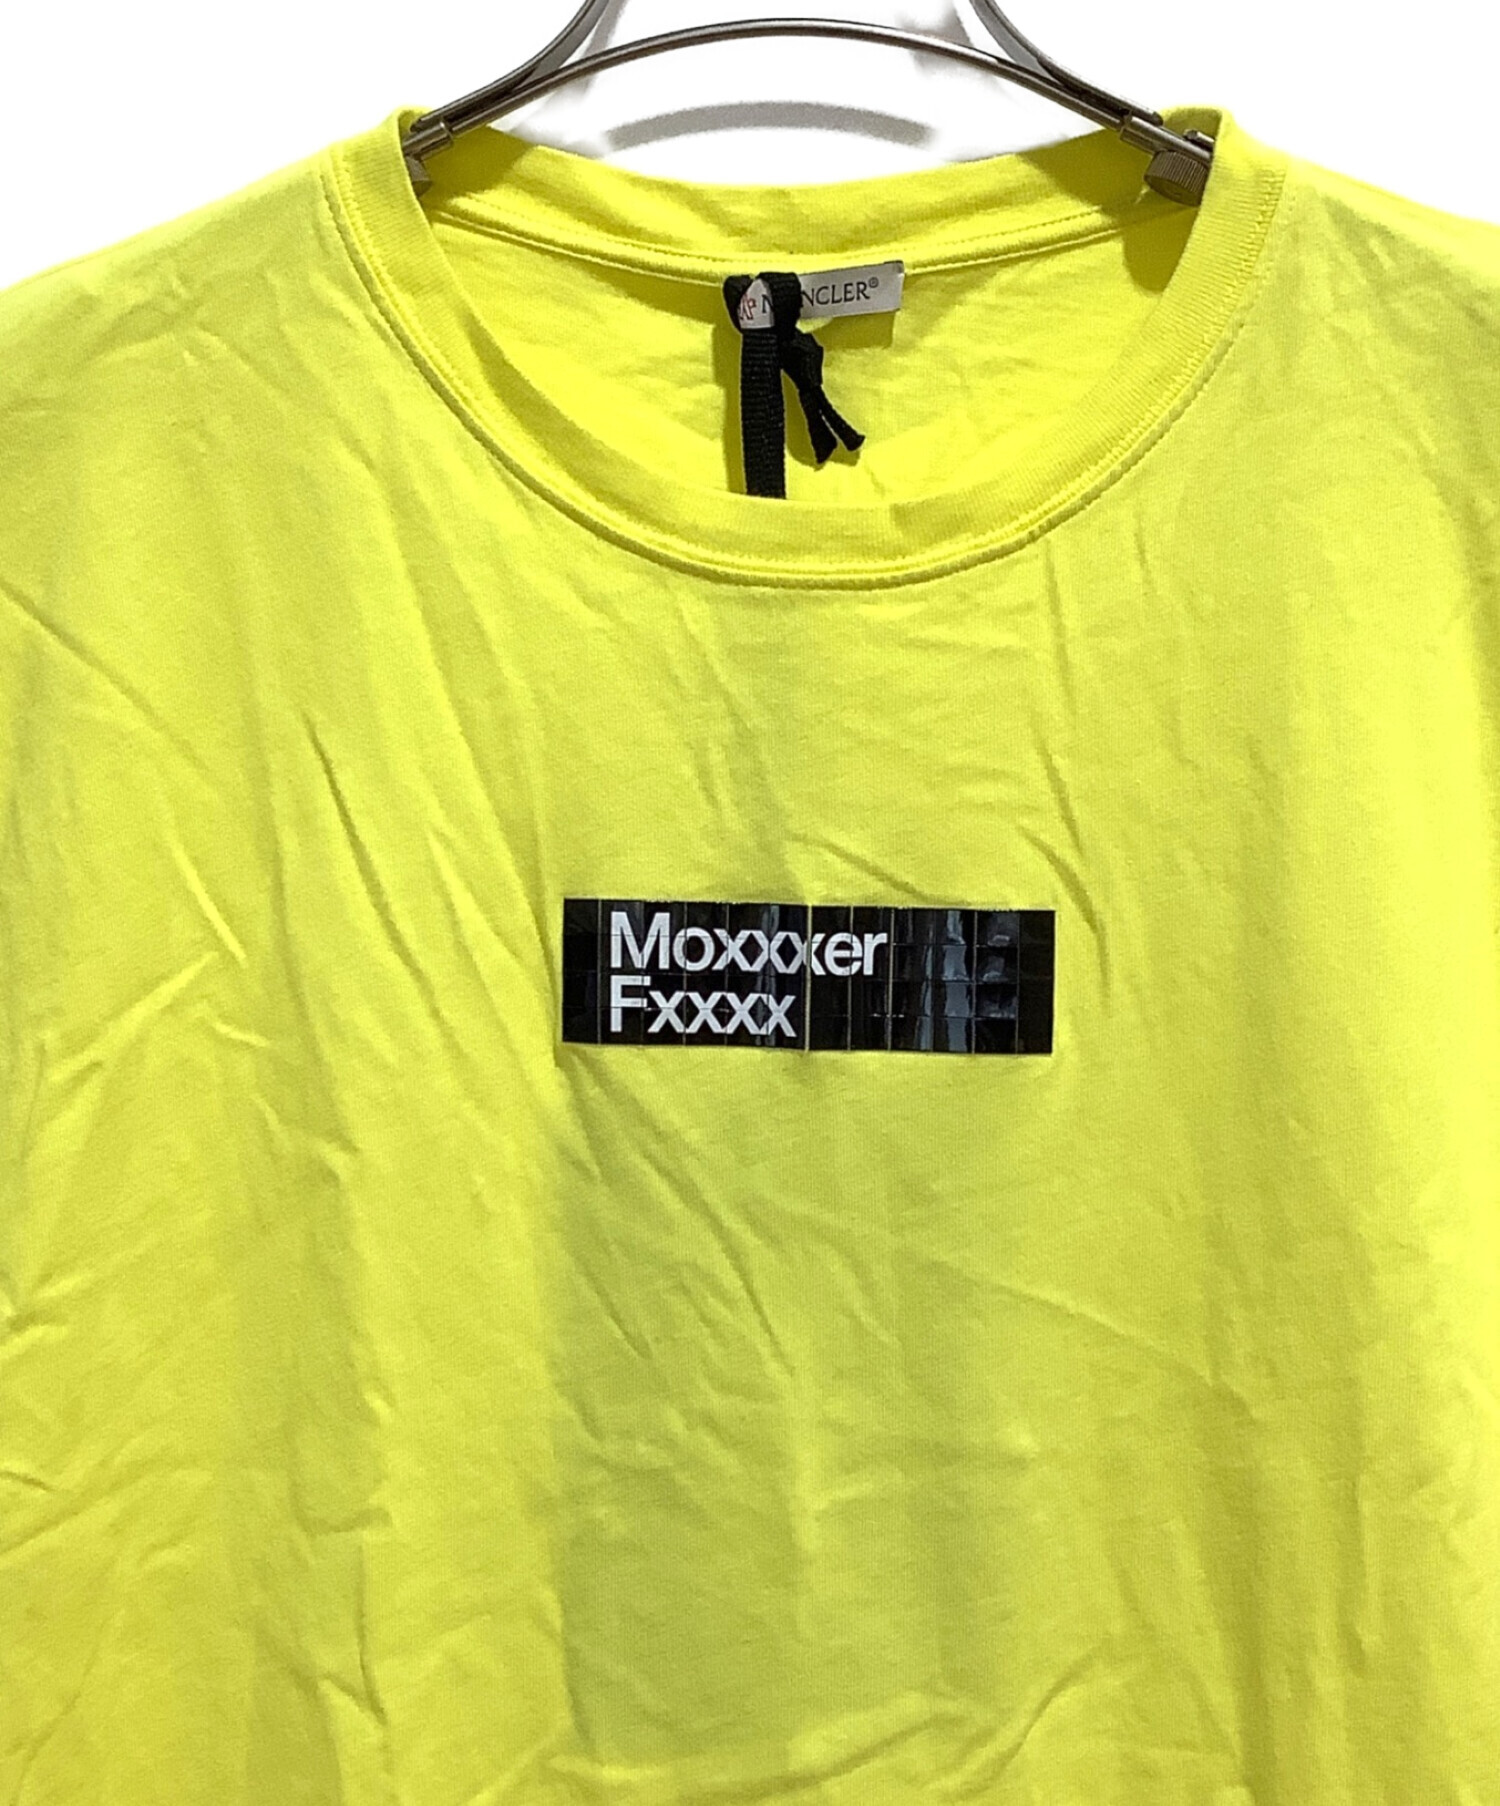 モンクレール フラグメント Tシャツ サイズM